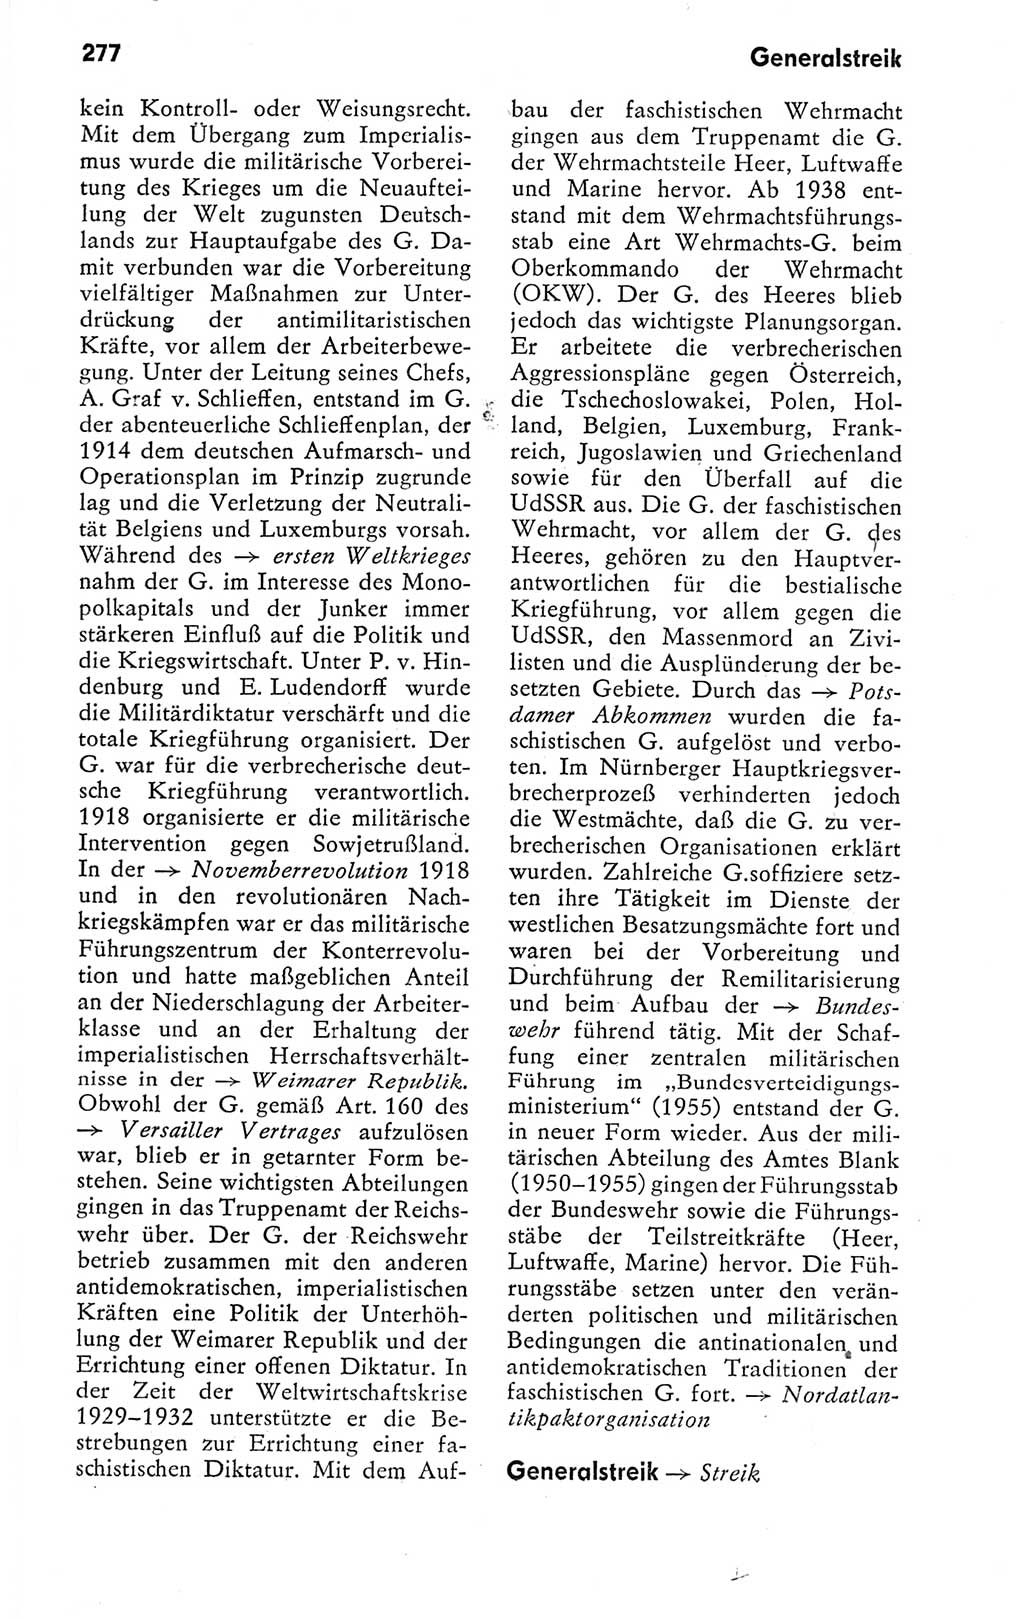 Kleines politisches Wörterbuch [Deutsche Demokratische Republik (DDR)] 1978, Seite 277 (Kl. pol. Wb. DDR 1978, S. 277)